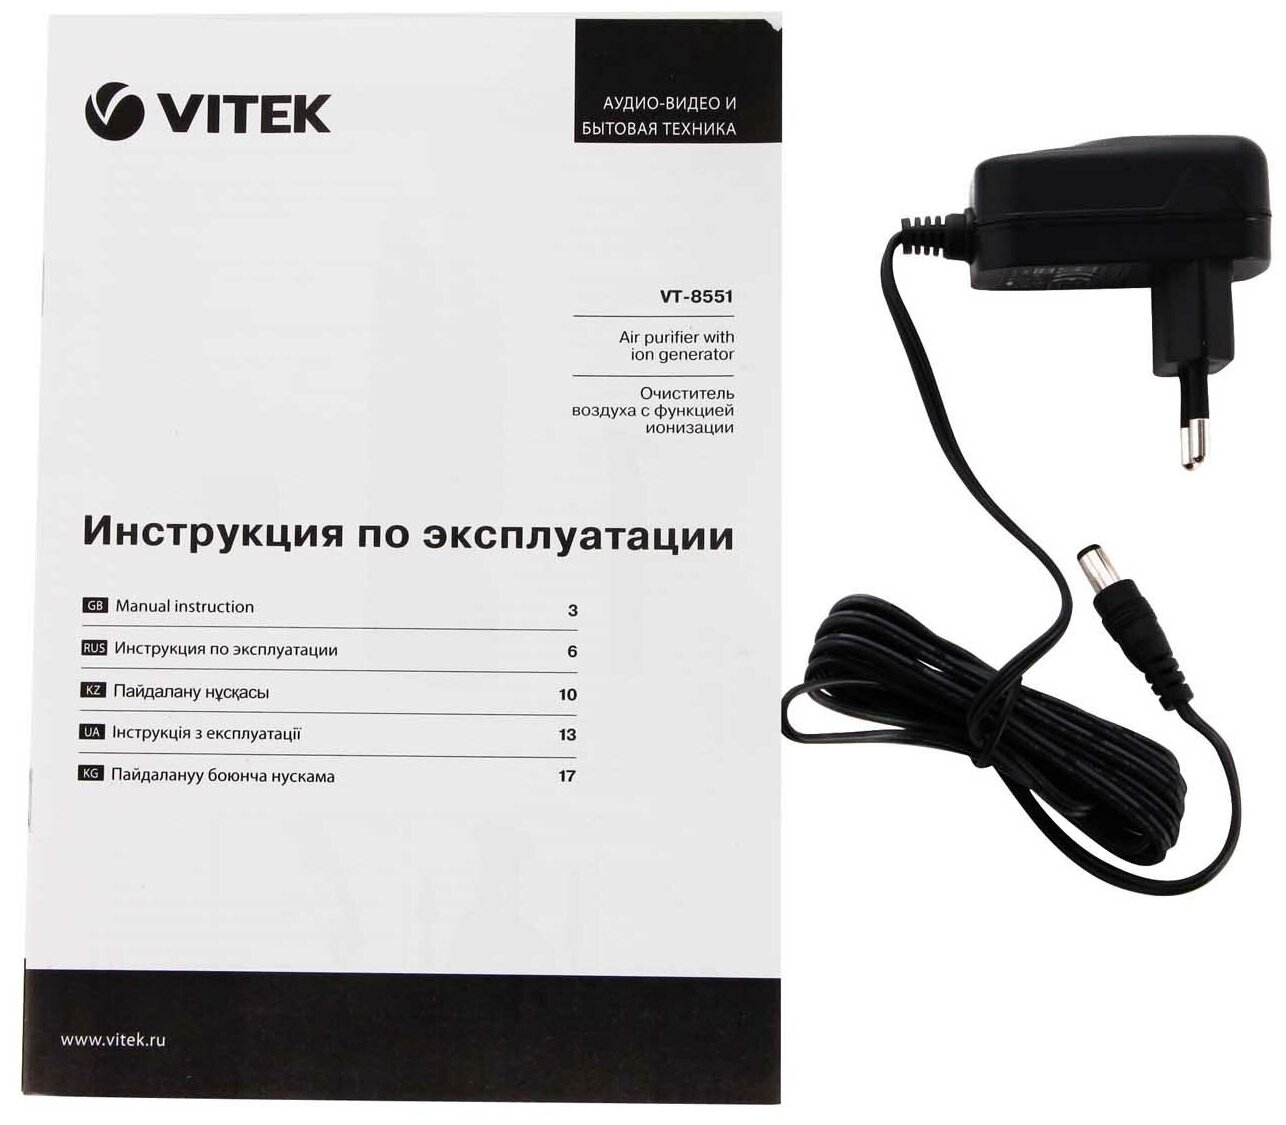 Воздухоочиститель Vitek VT-8551